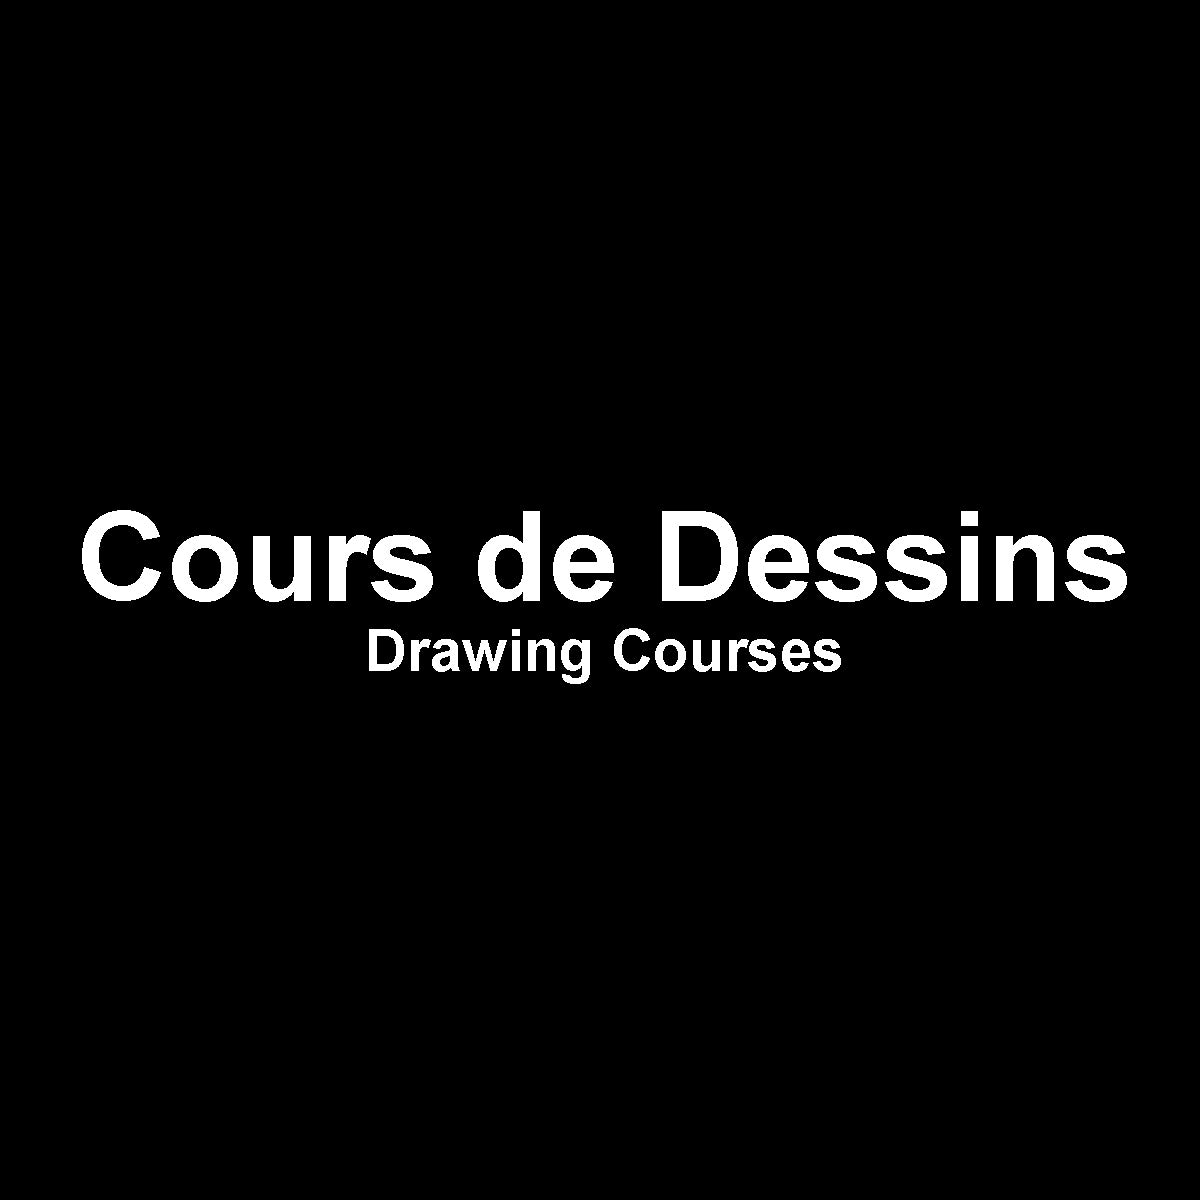 Cours de Dessin - Drawing Courses